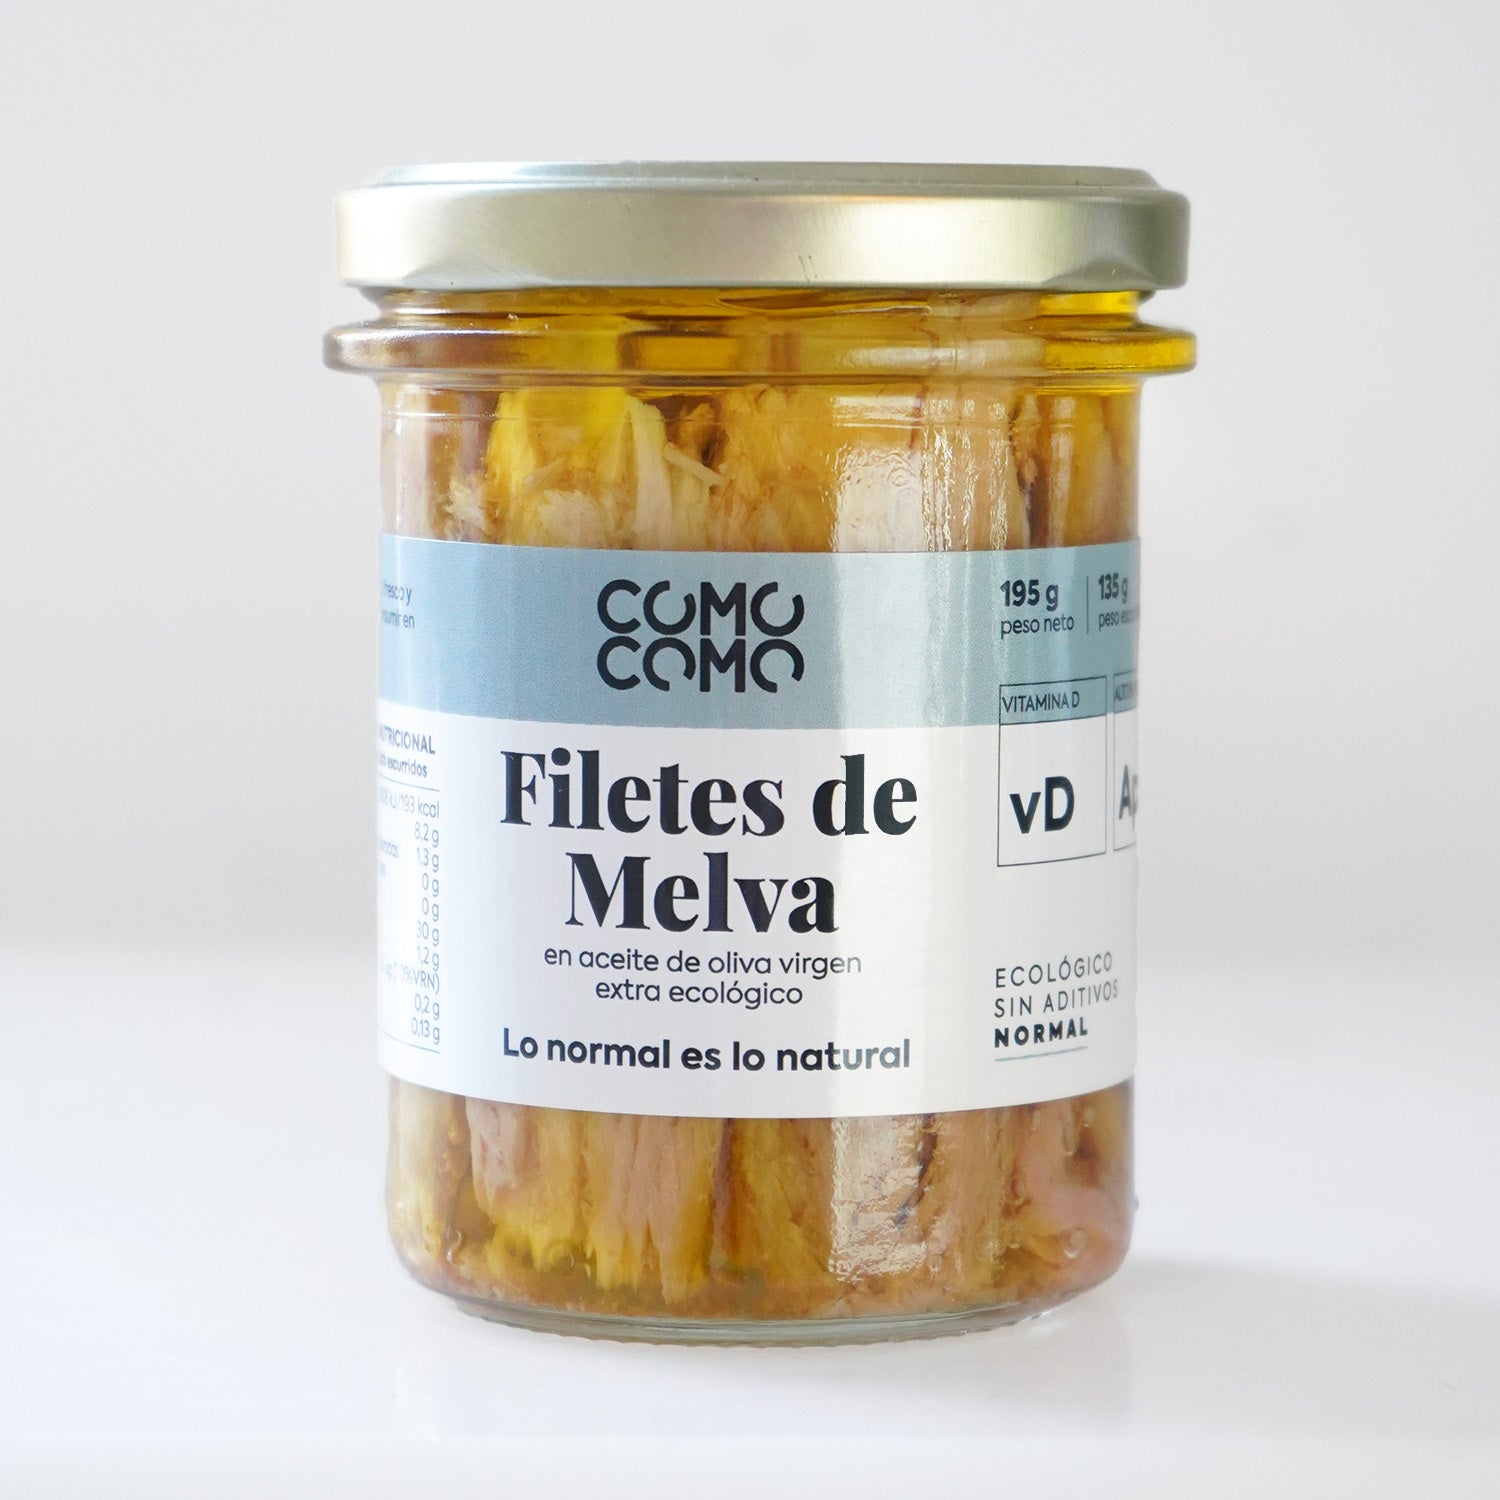 Filetes de Melva en aceite de oliva virgen extra ecológico - Tarro de 195g